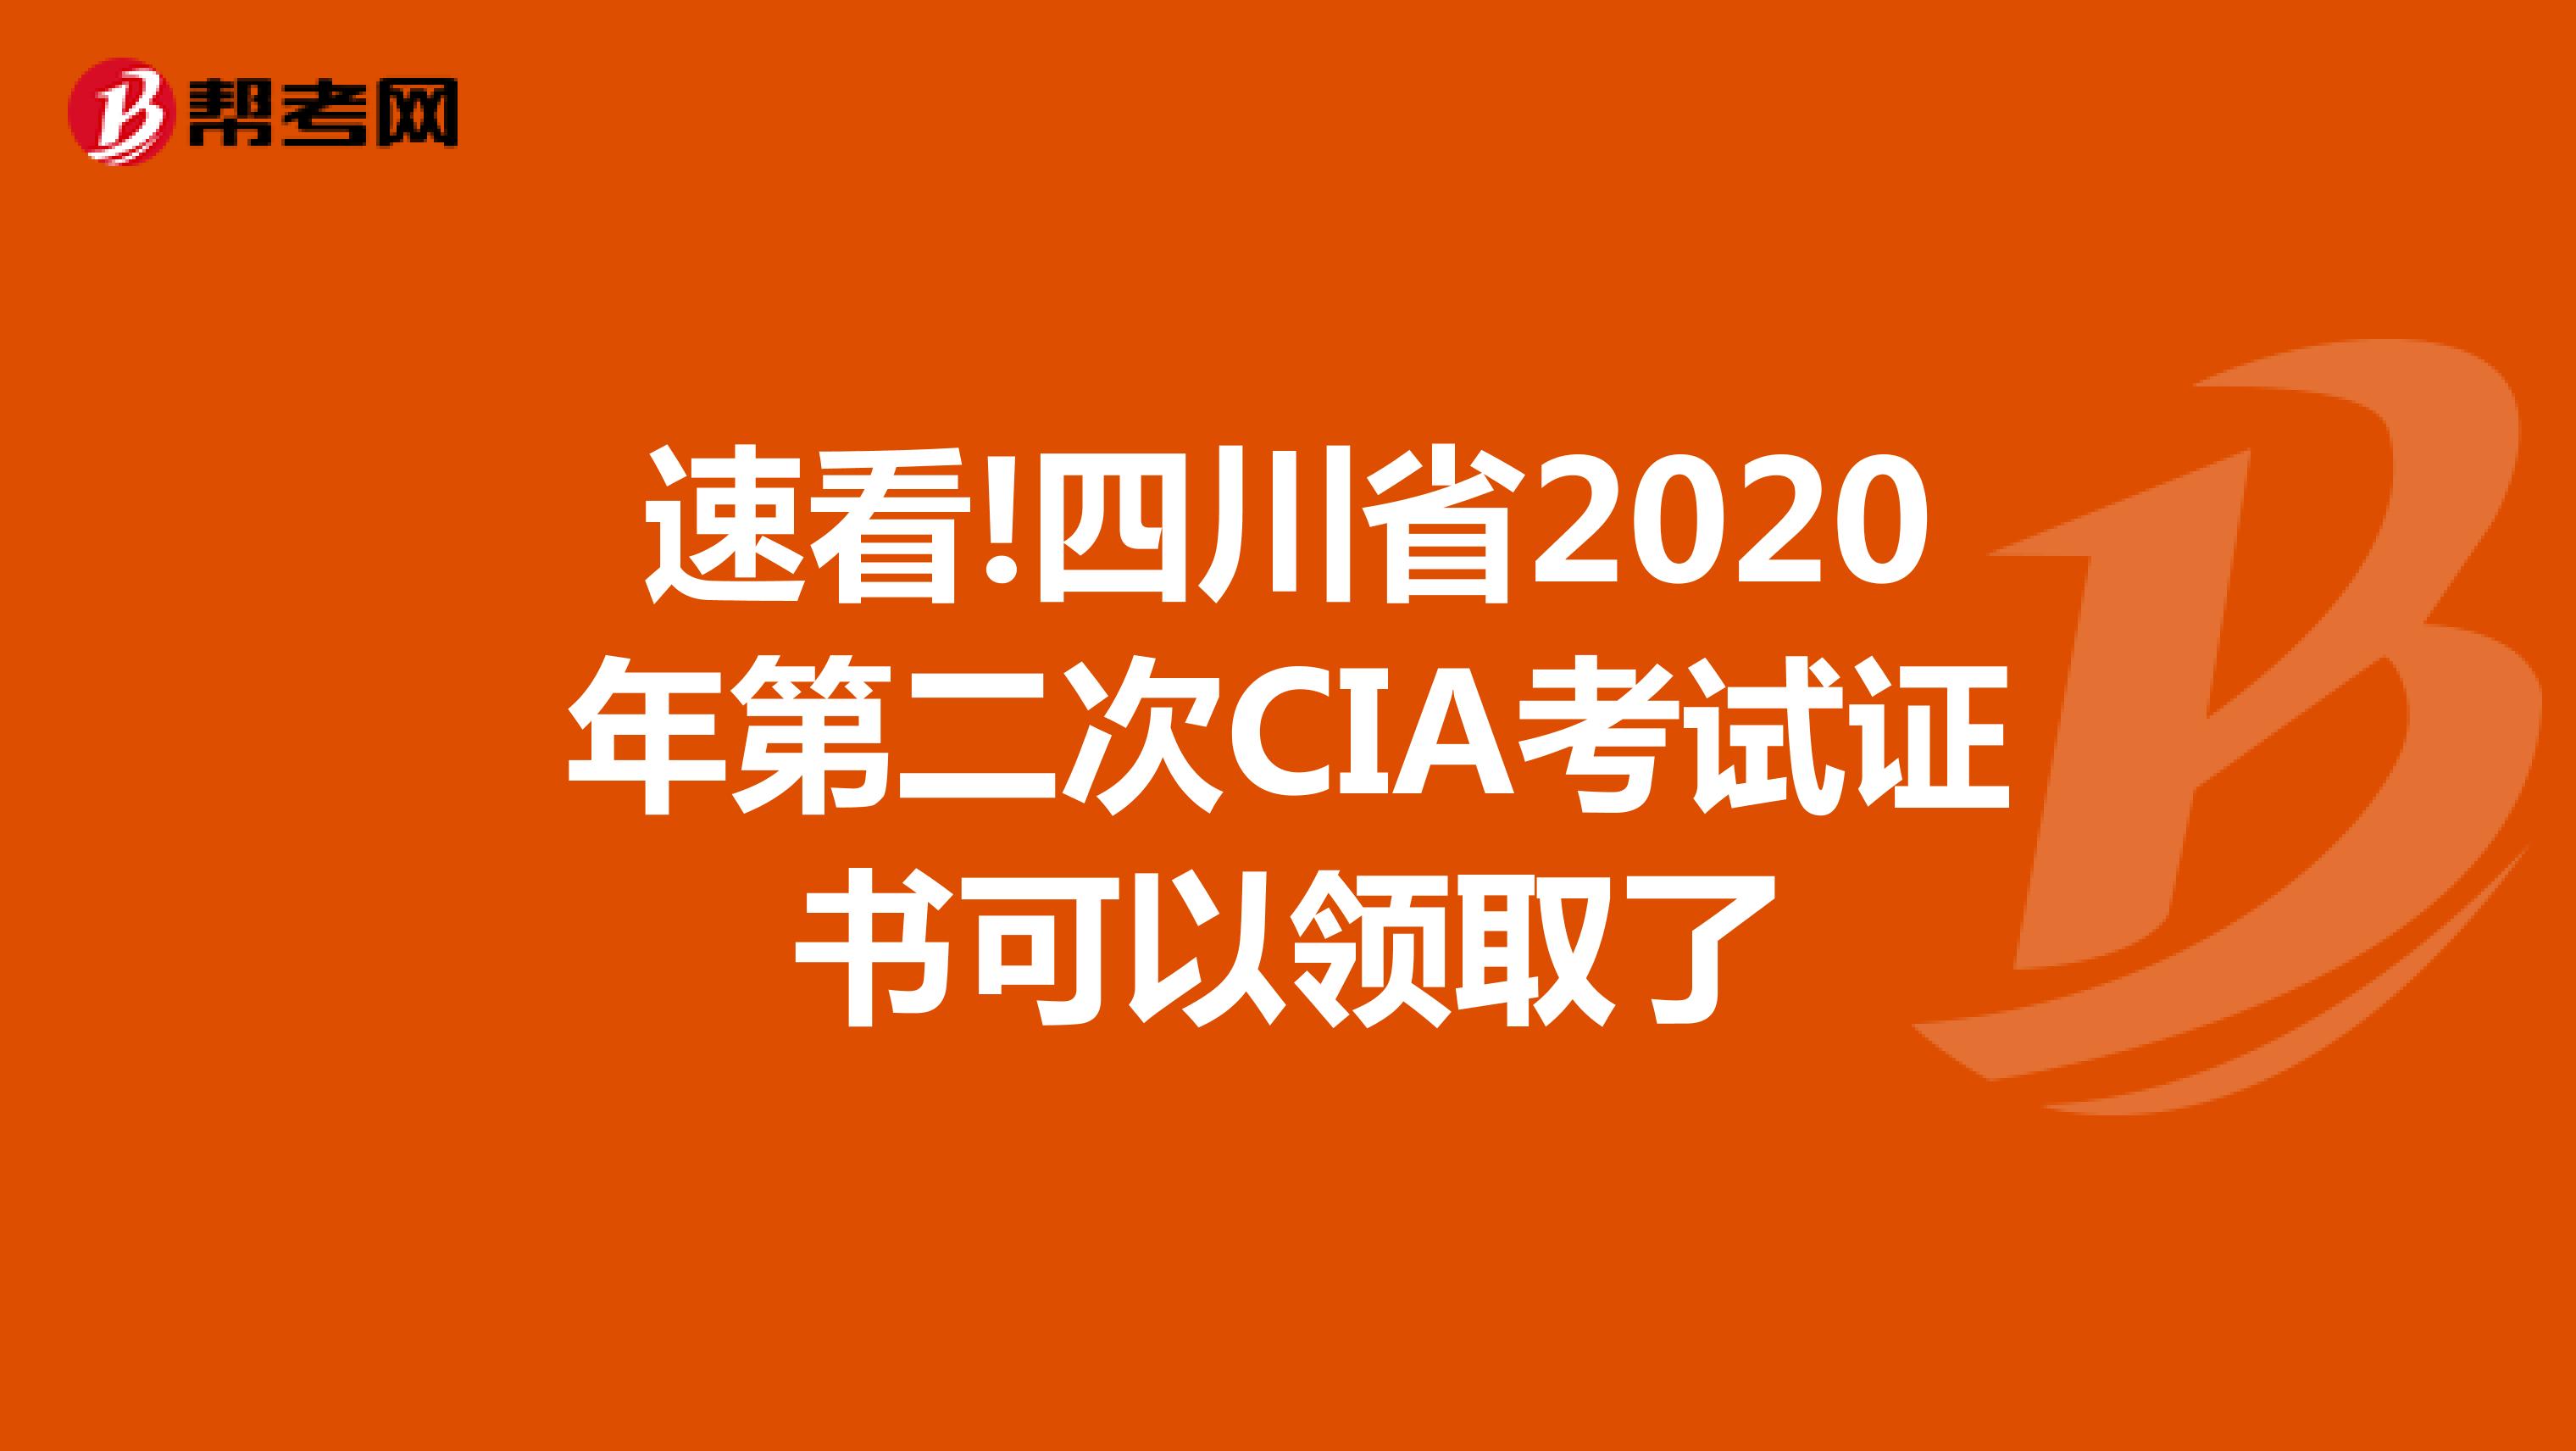 速看!四川省2020年第二次CIA考试证书可以领取了